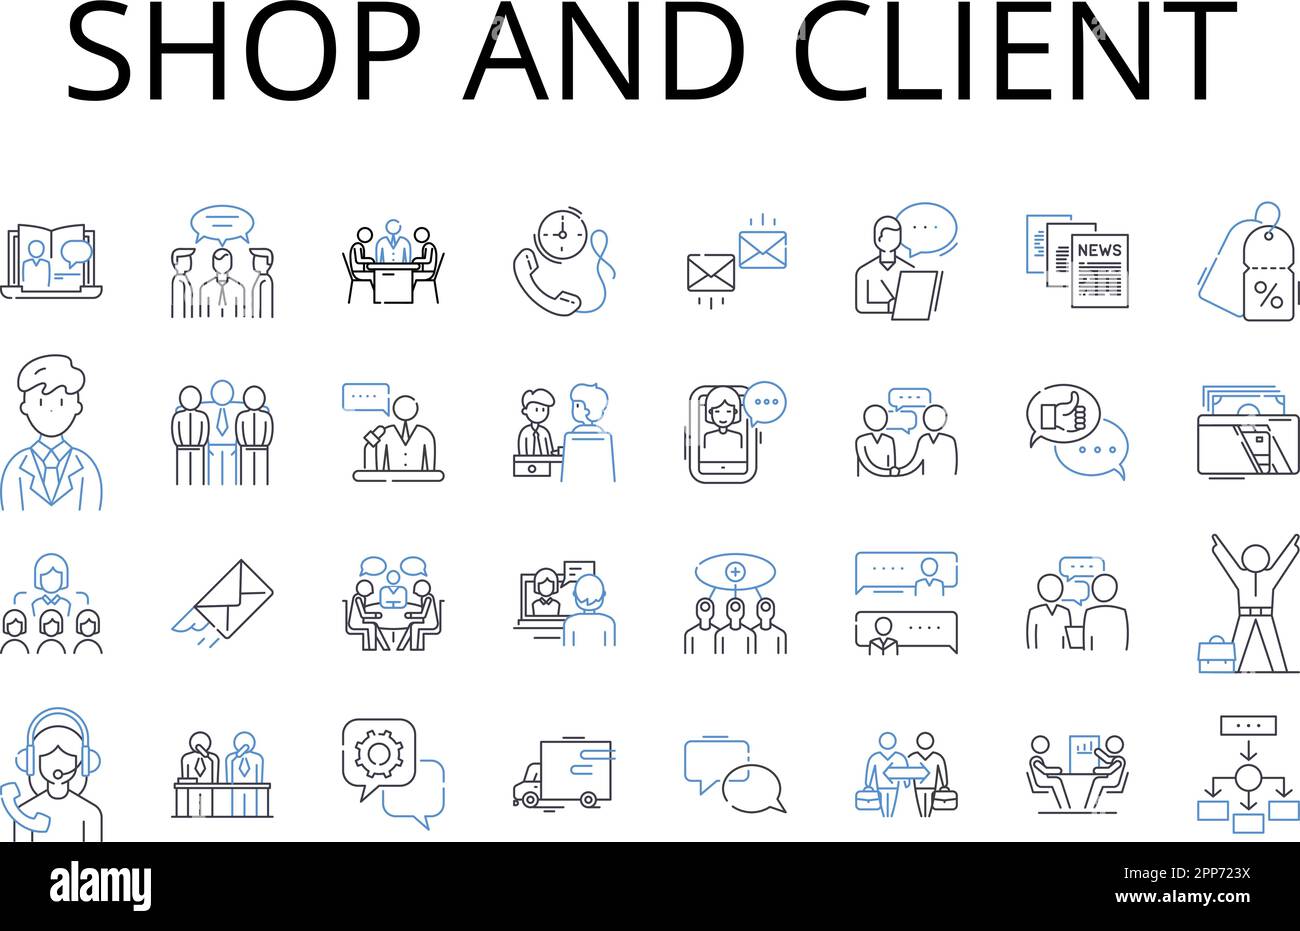 Shop And Client Line Icons Collection Hop Store Boutique Market 